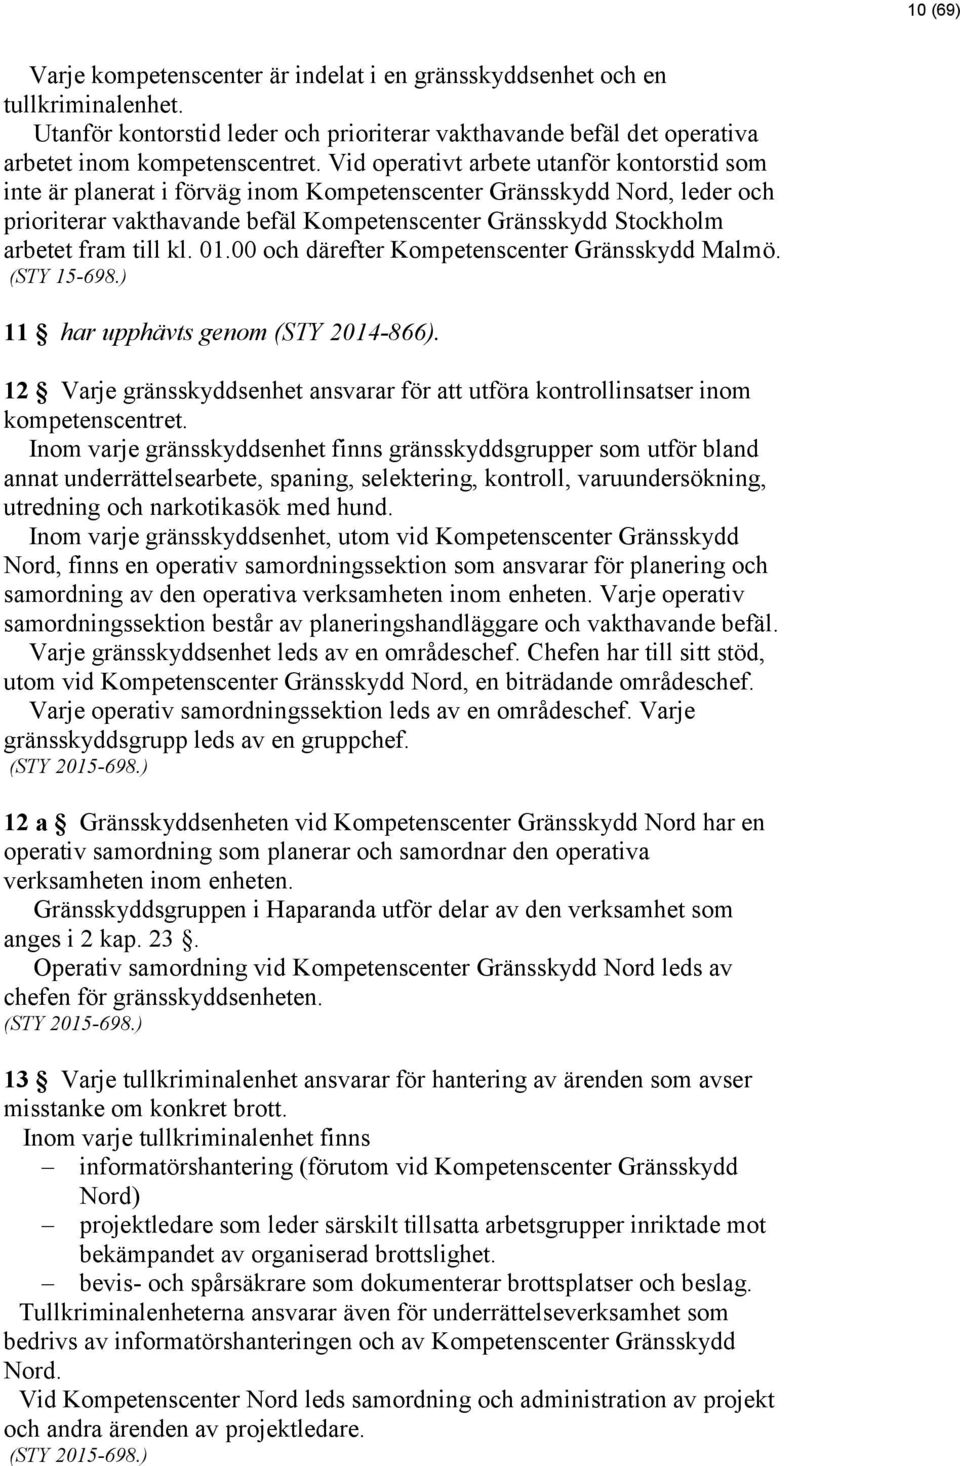 till kl. 01.00 och därefter Kompetenscenter Gränsskydd Malmö. (STY 15-698.) 11 har upphävts genom (STY 2014-866).